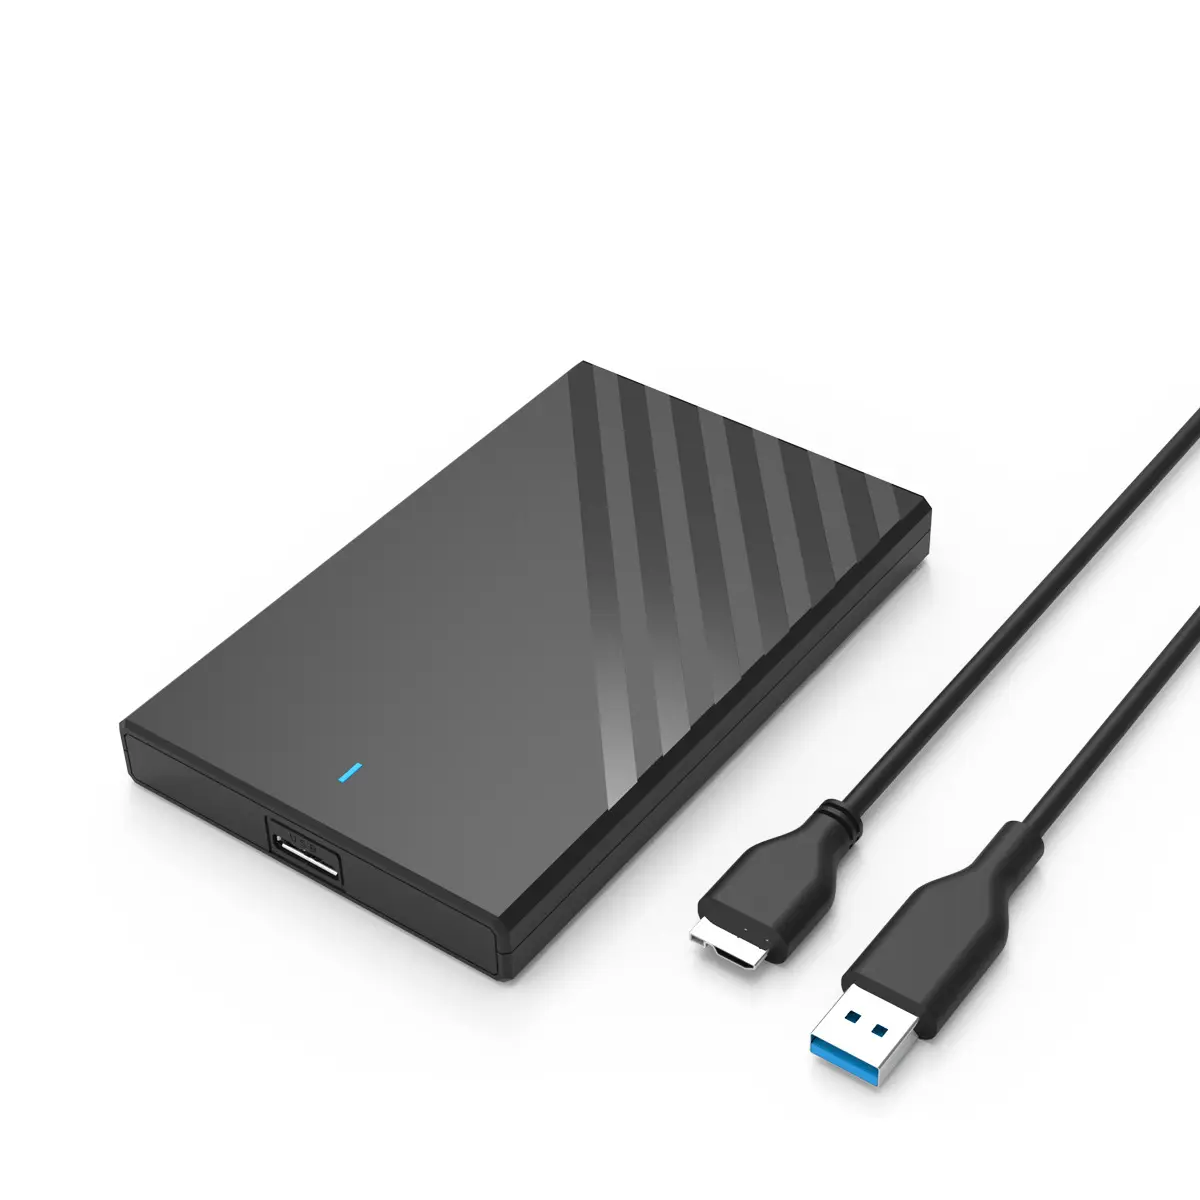 ממשק USB3.0 בגודל 2.5 אינץ' נייד חיצוני SSD התקנה ללא ברגים במהירות גבוהה תיבת דיסק קשיח נייד מכאנית במצב מוצק